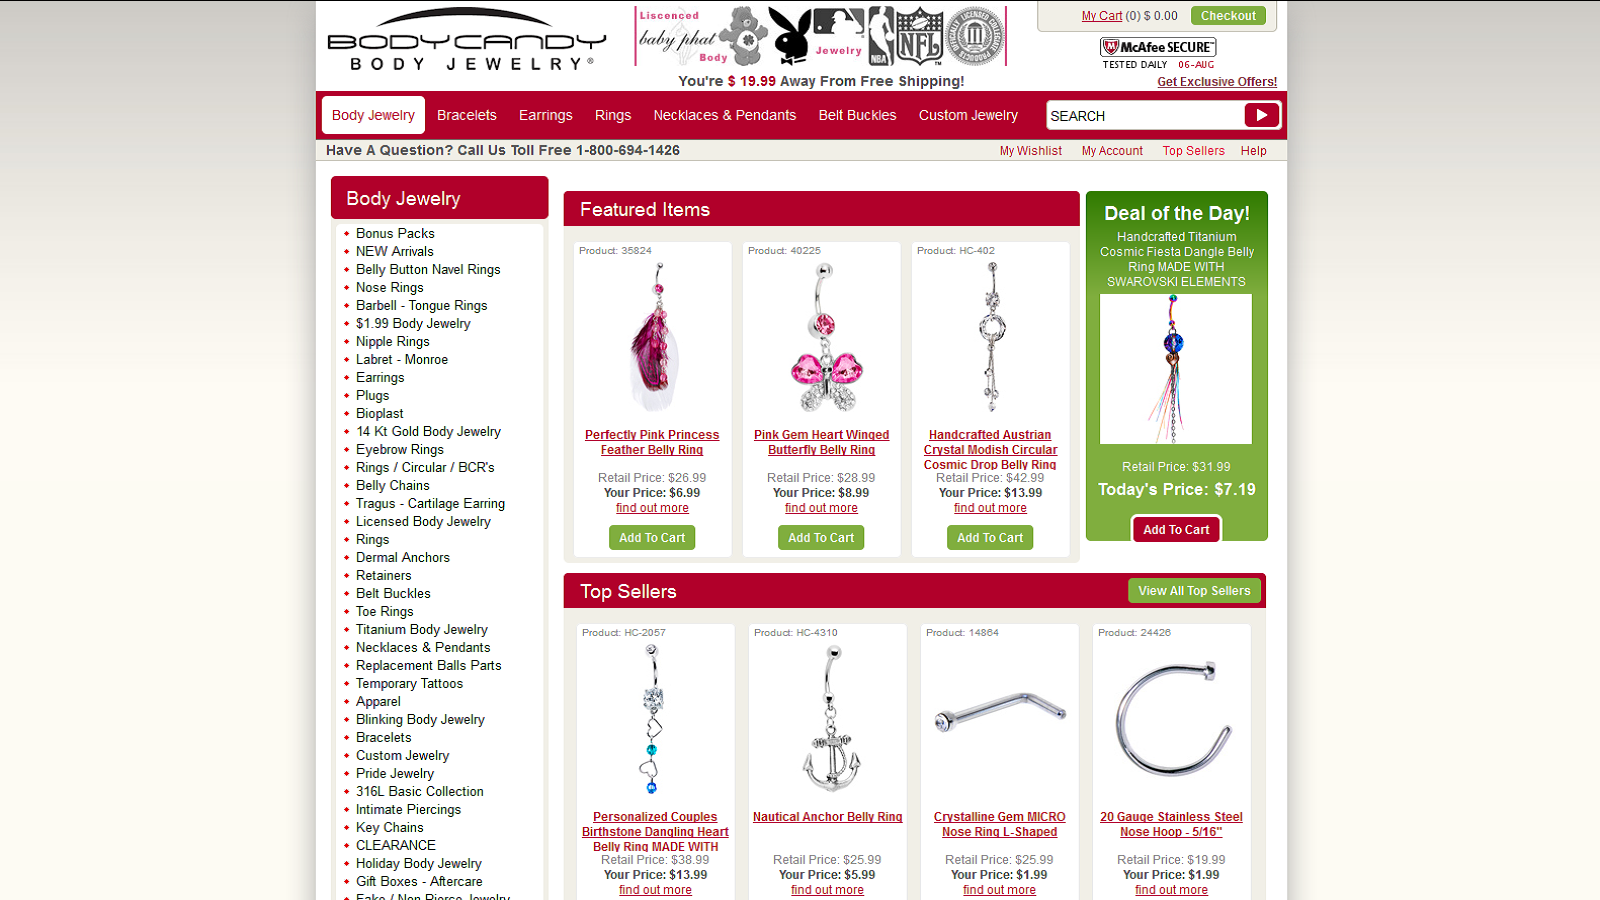 Best Jewelry Deals Online